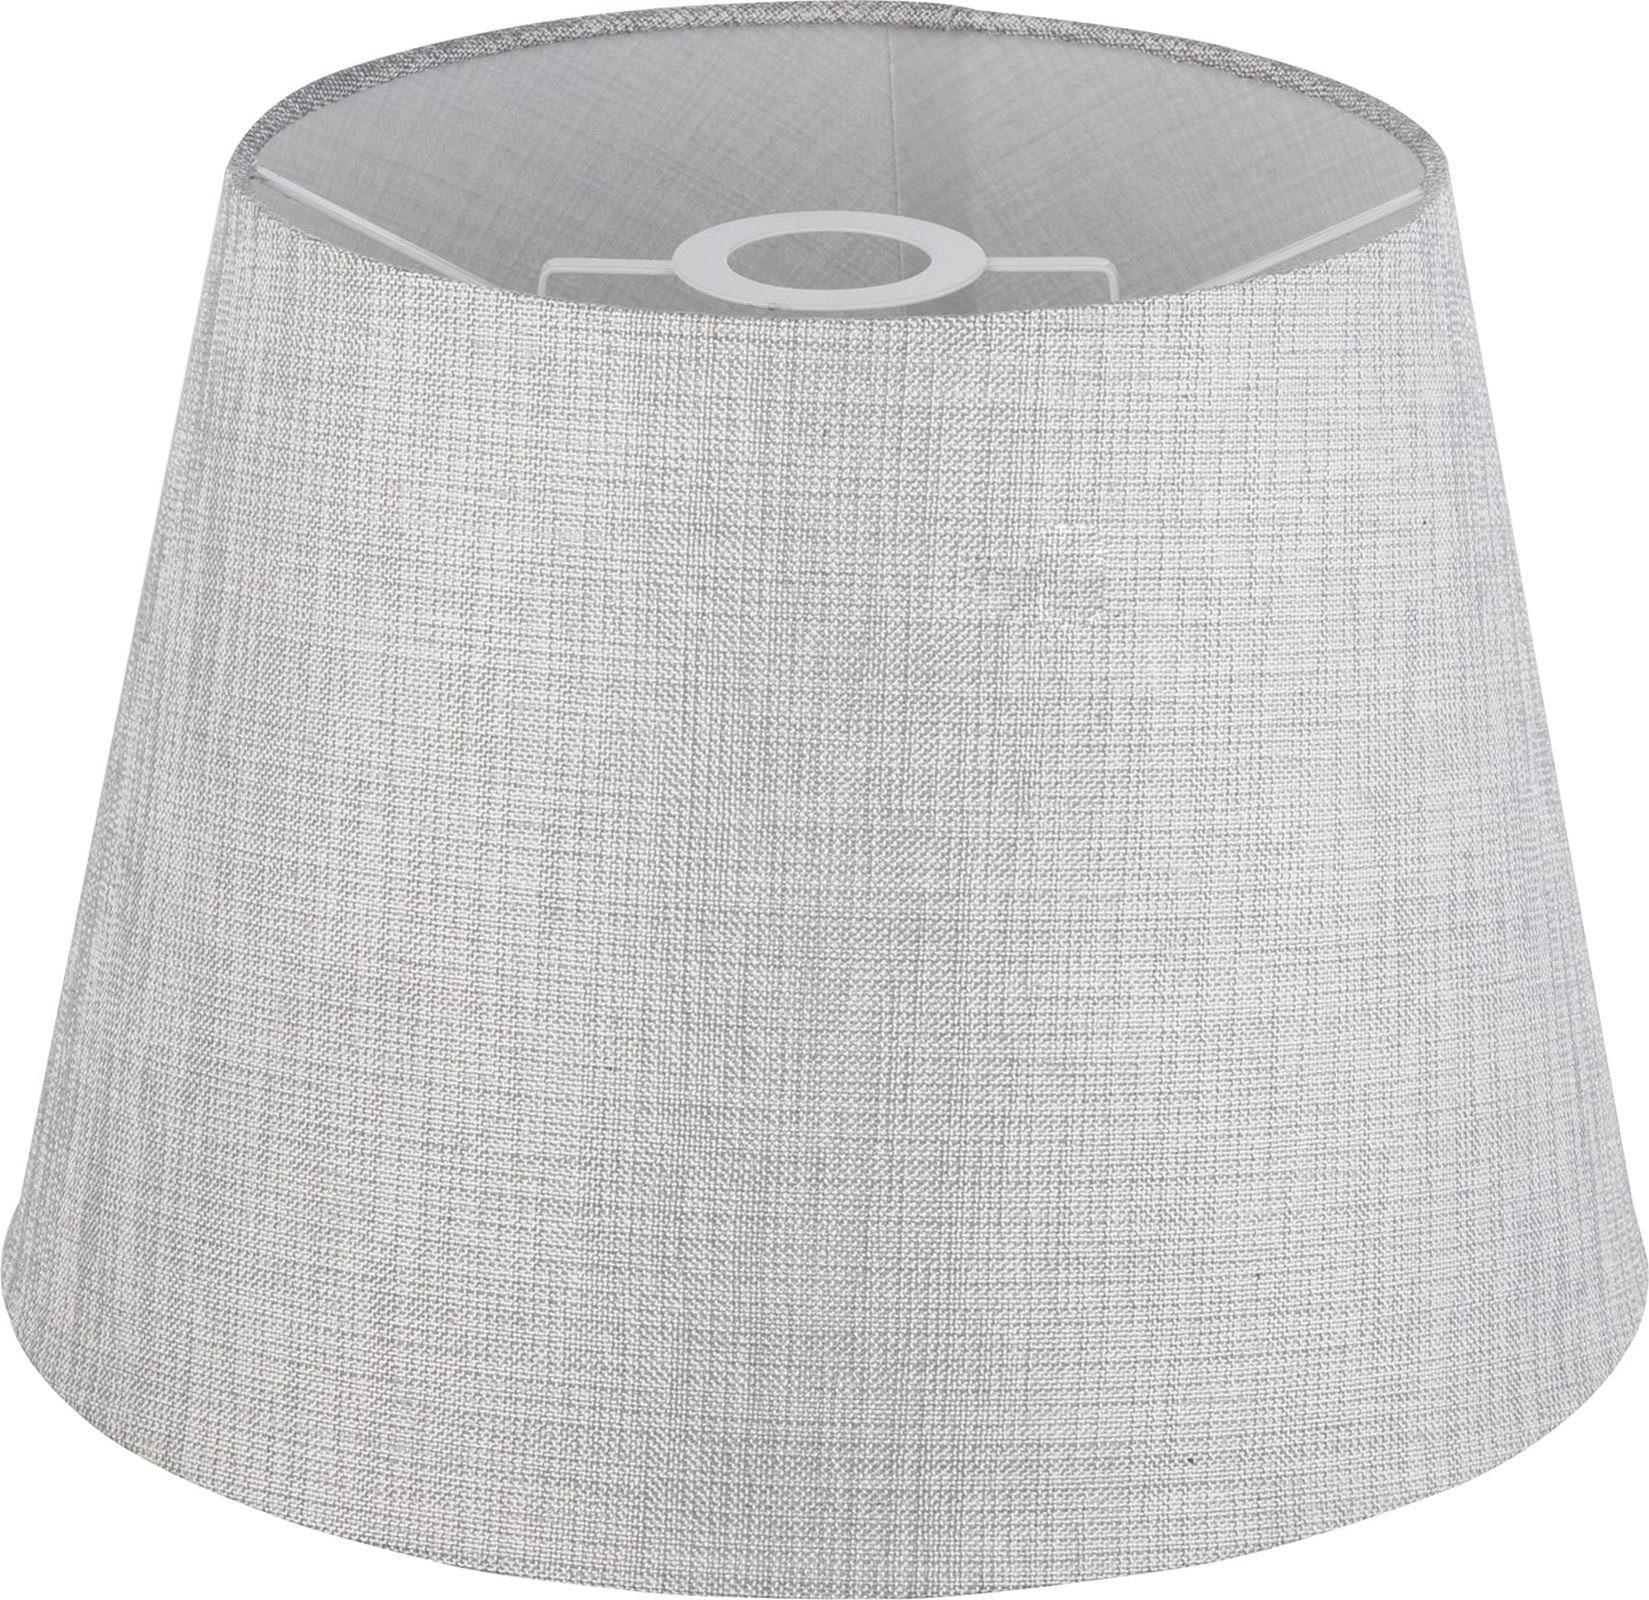 35 Lampenschirm für Textilschirm Tischleuchte GLOBO Globo Grau Tischlampen Tischleuchten